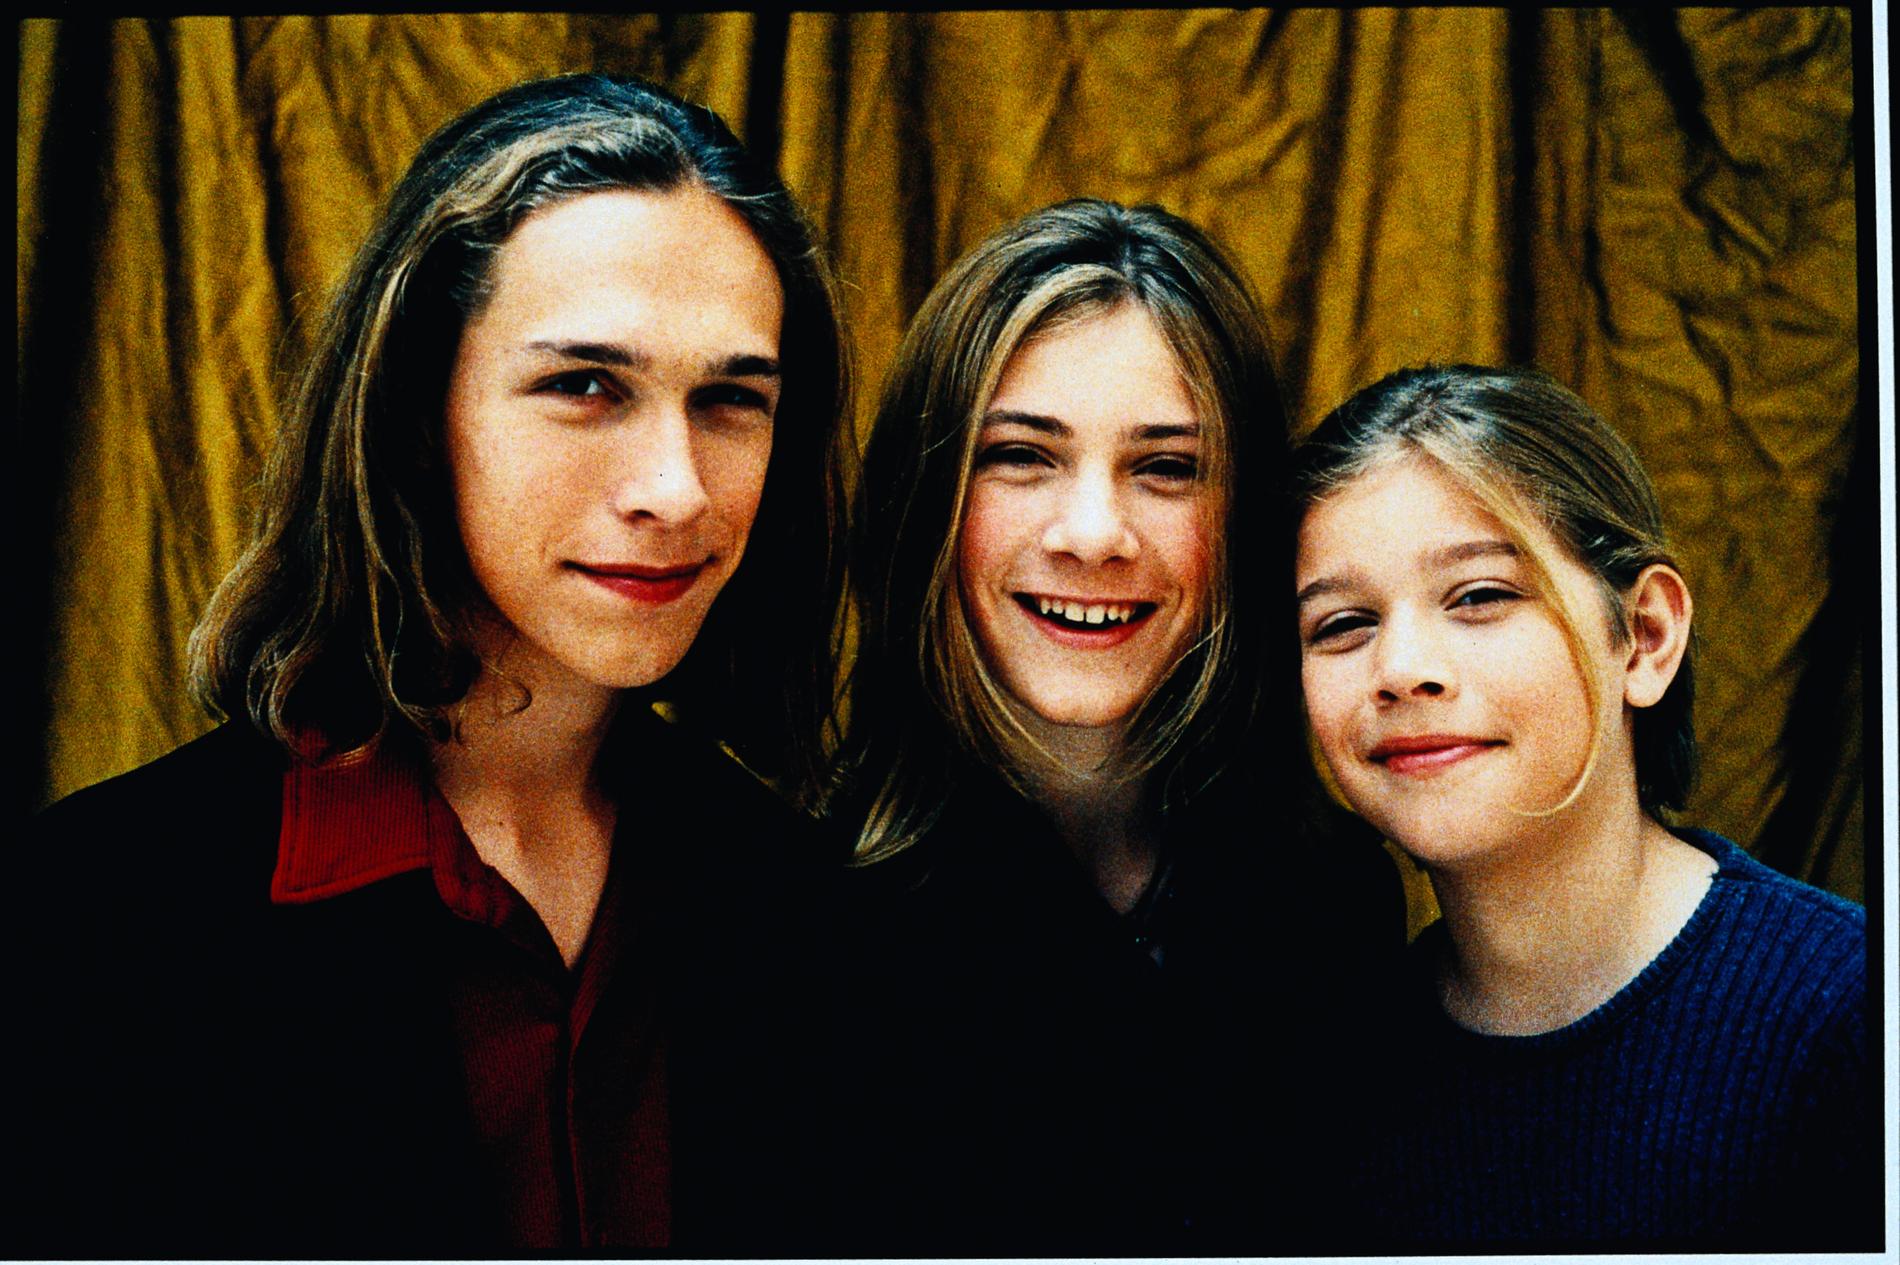 Isaac, Taylor och Zachary Hanson år 2000.